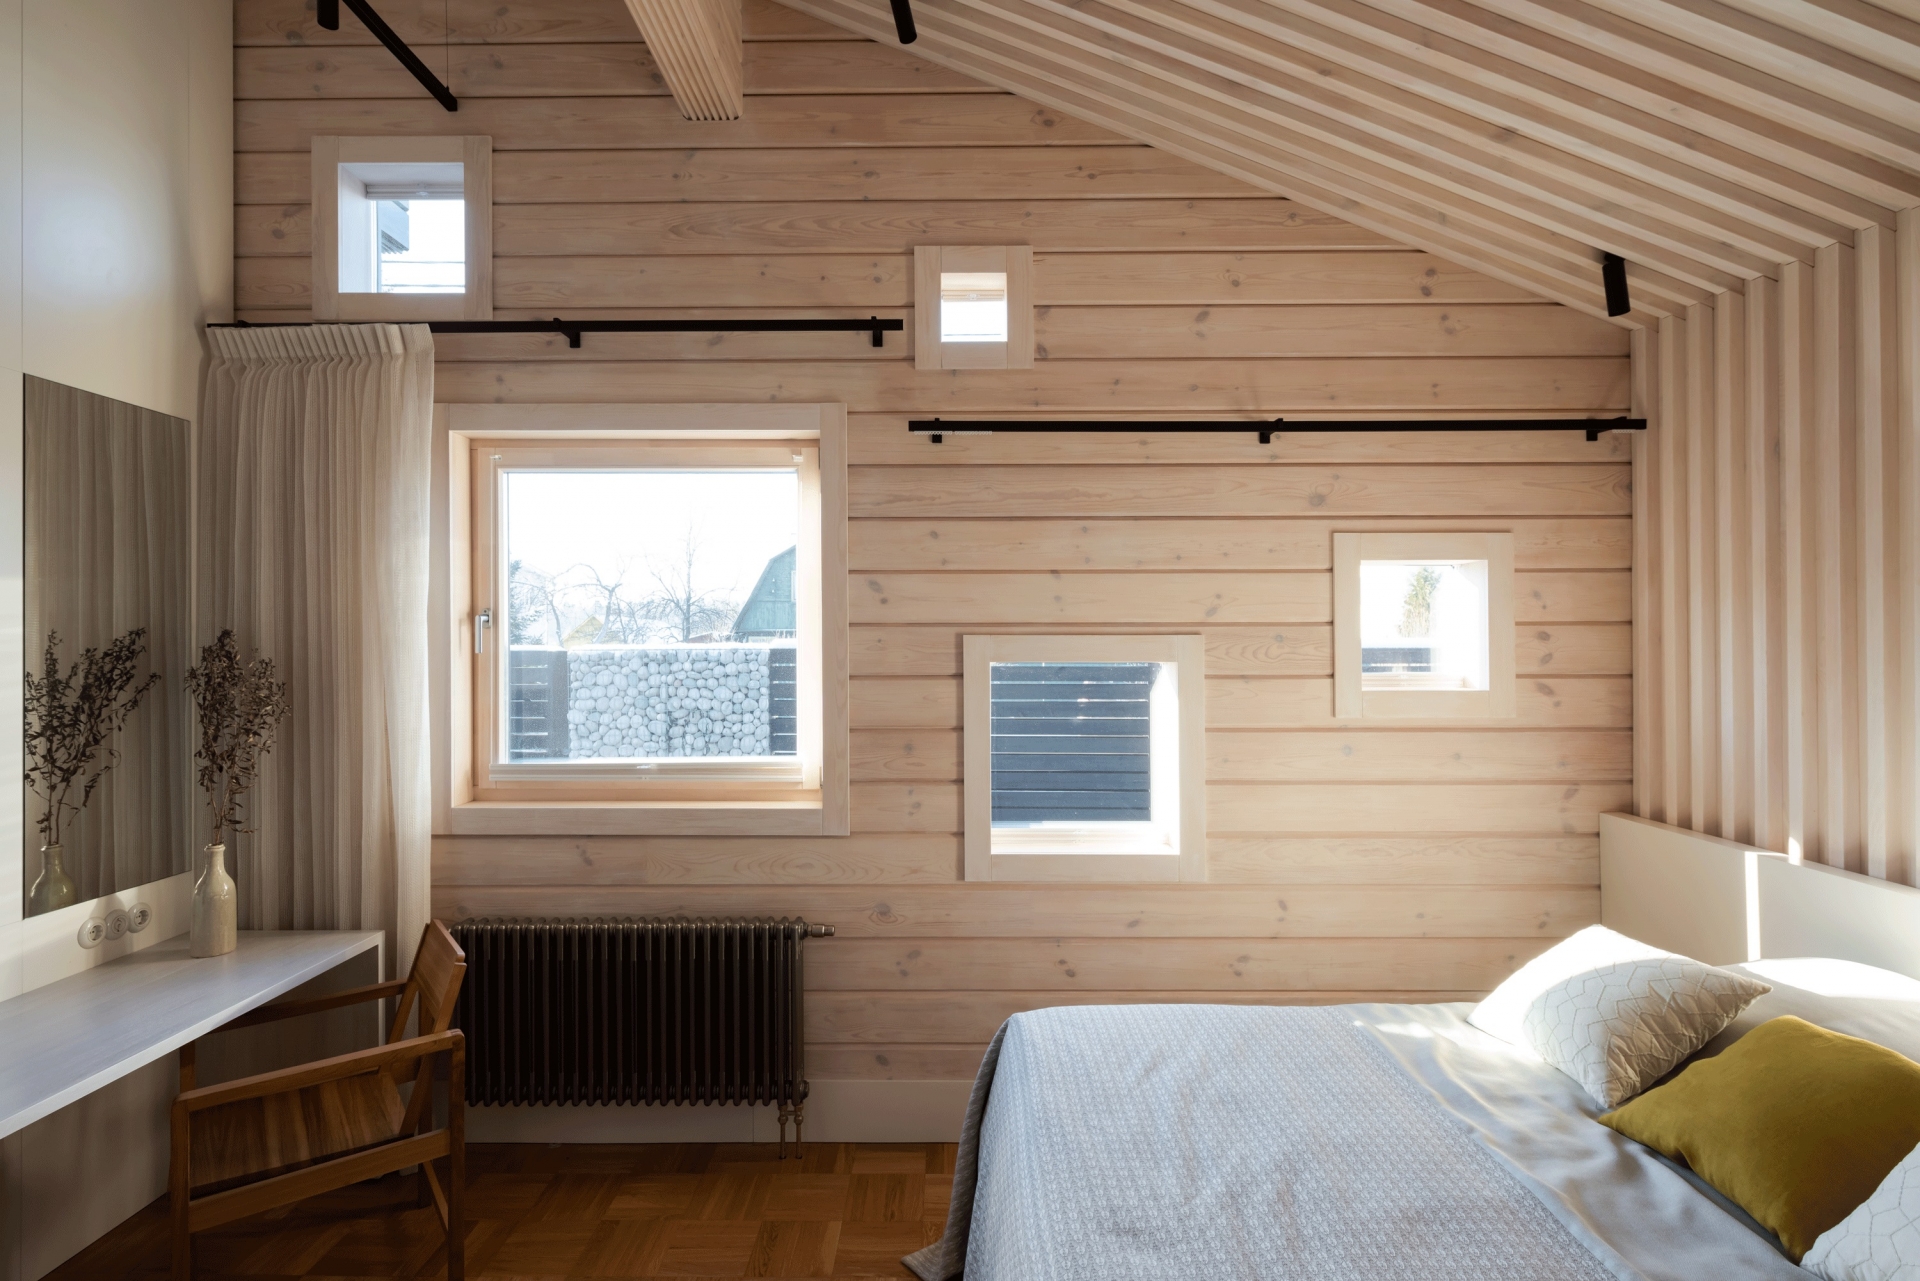 Lam gỗ kéo dài từ trần nhà xuống đầu giường với bức tường gỗ tươi sáng, tương phản nhẹ nhàng với sàn gỗ tối màu thêm phần mộc mạc.